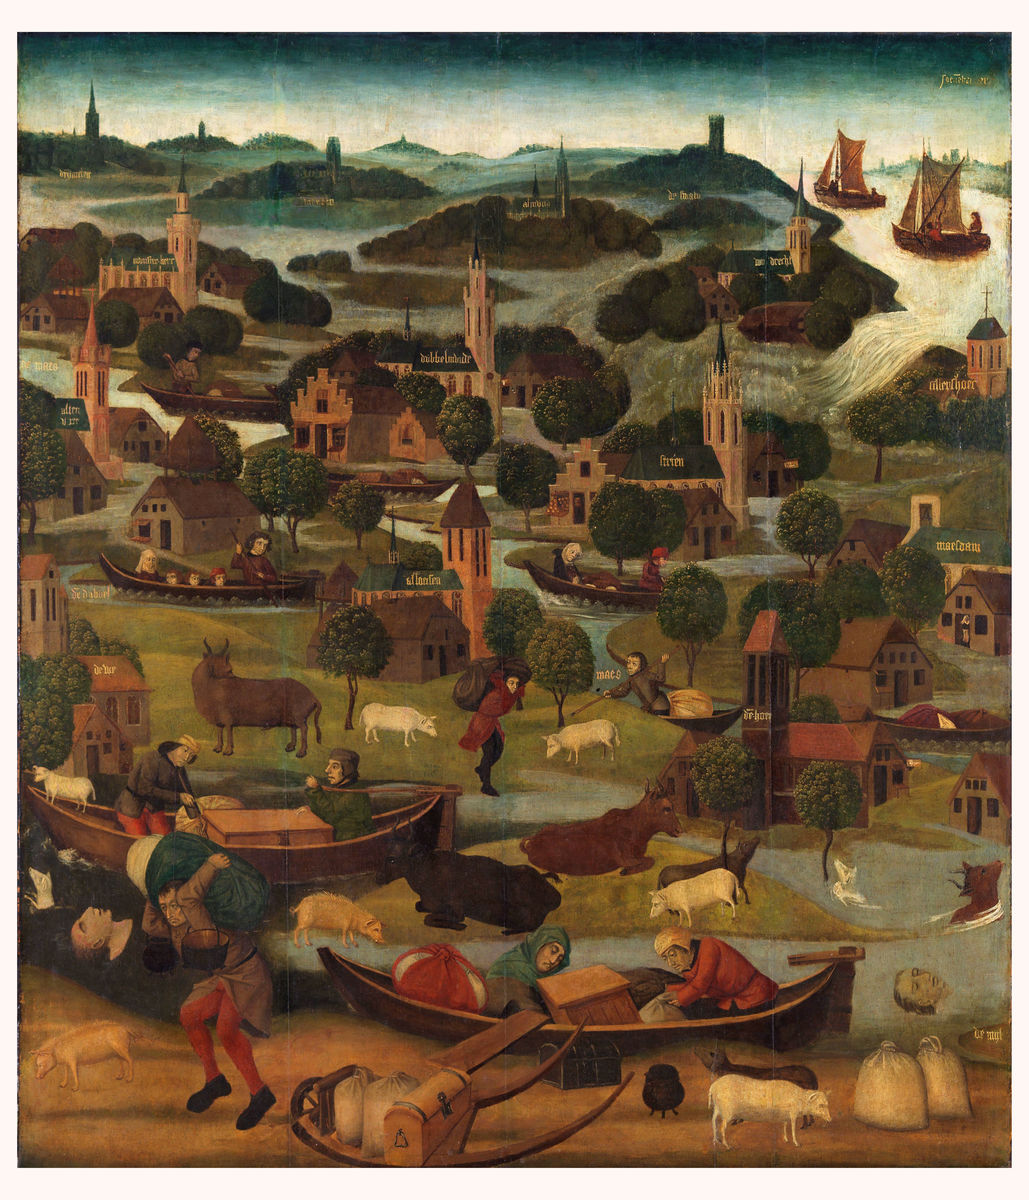 L'inondation de la Saint Elizabeth's Day - ch. 1490 - c. 1495 